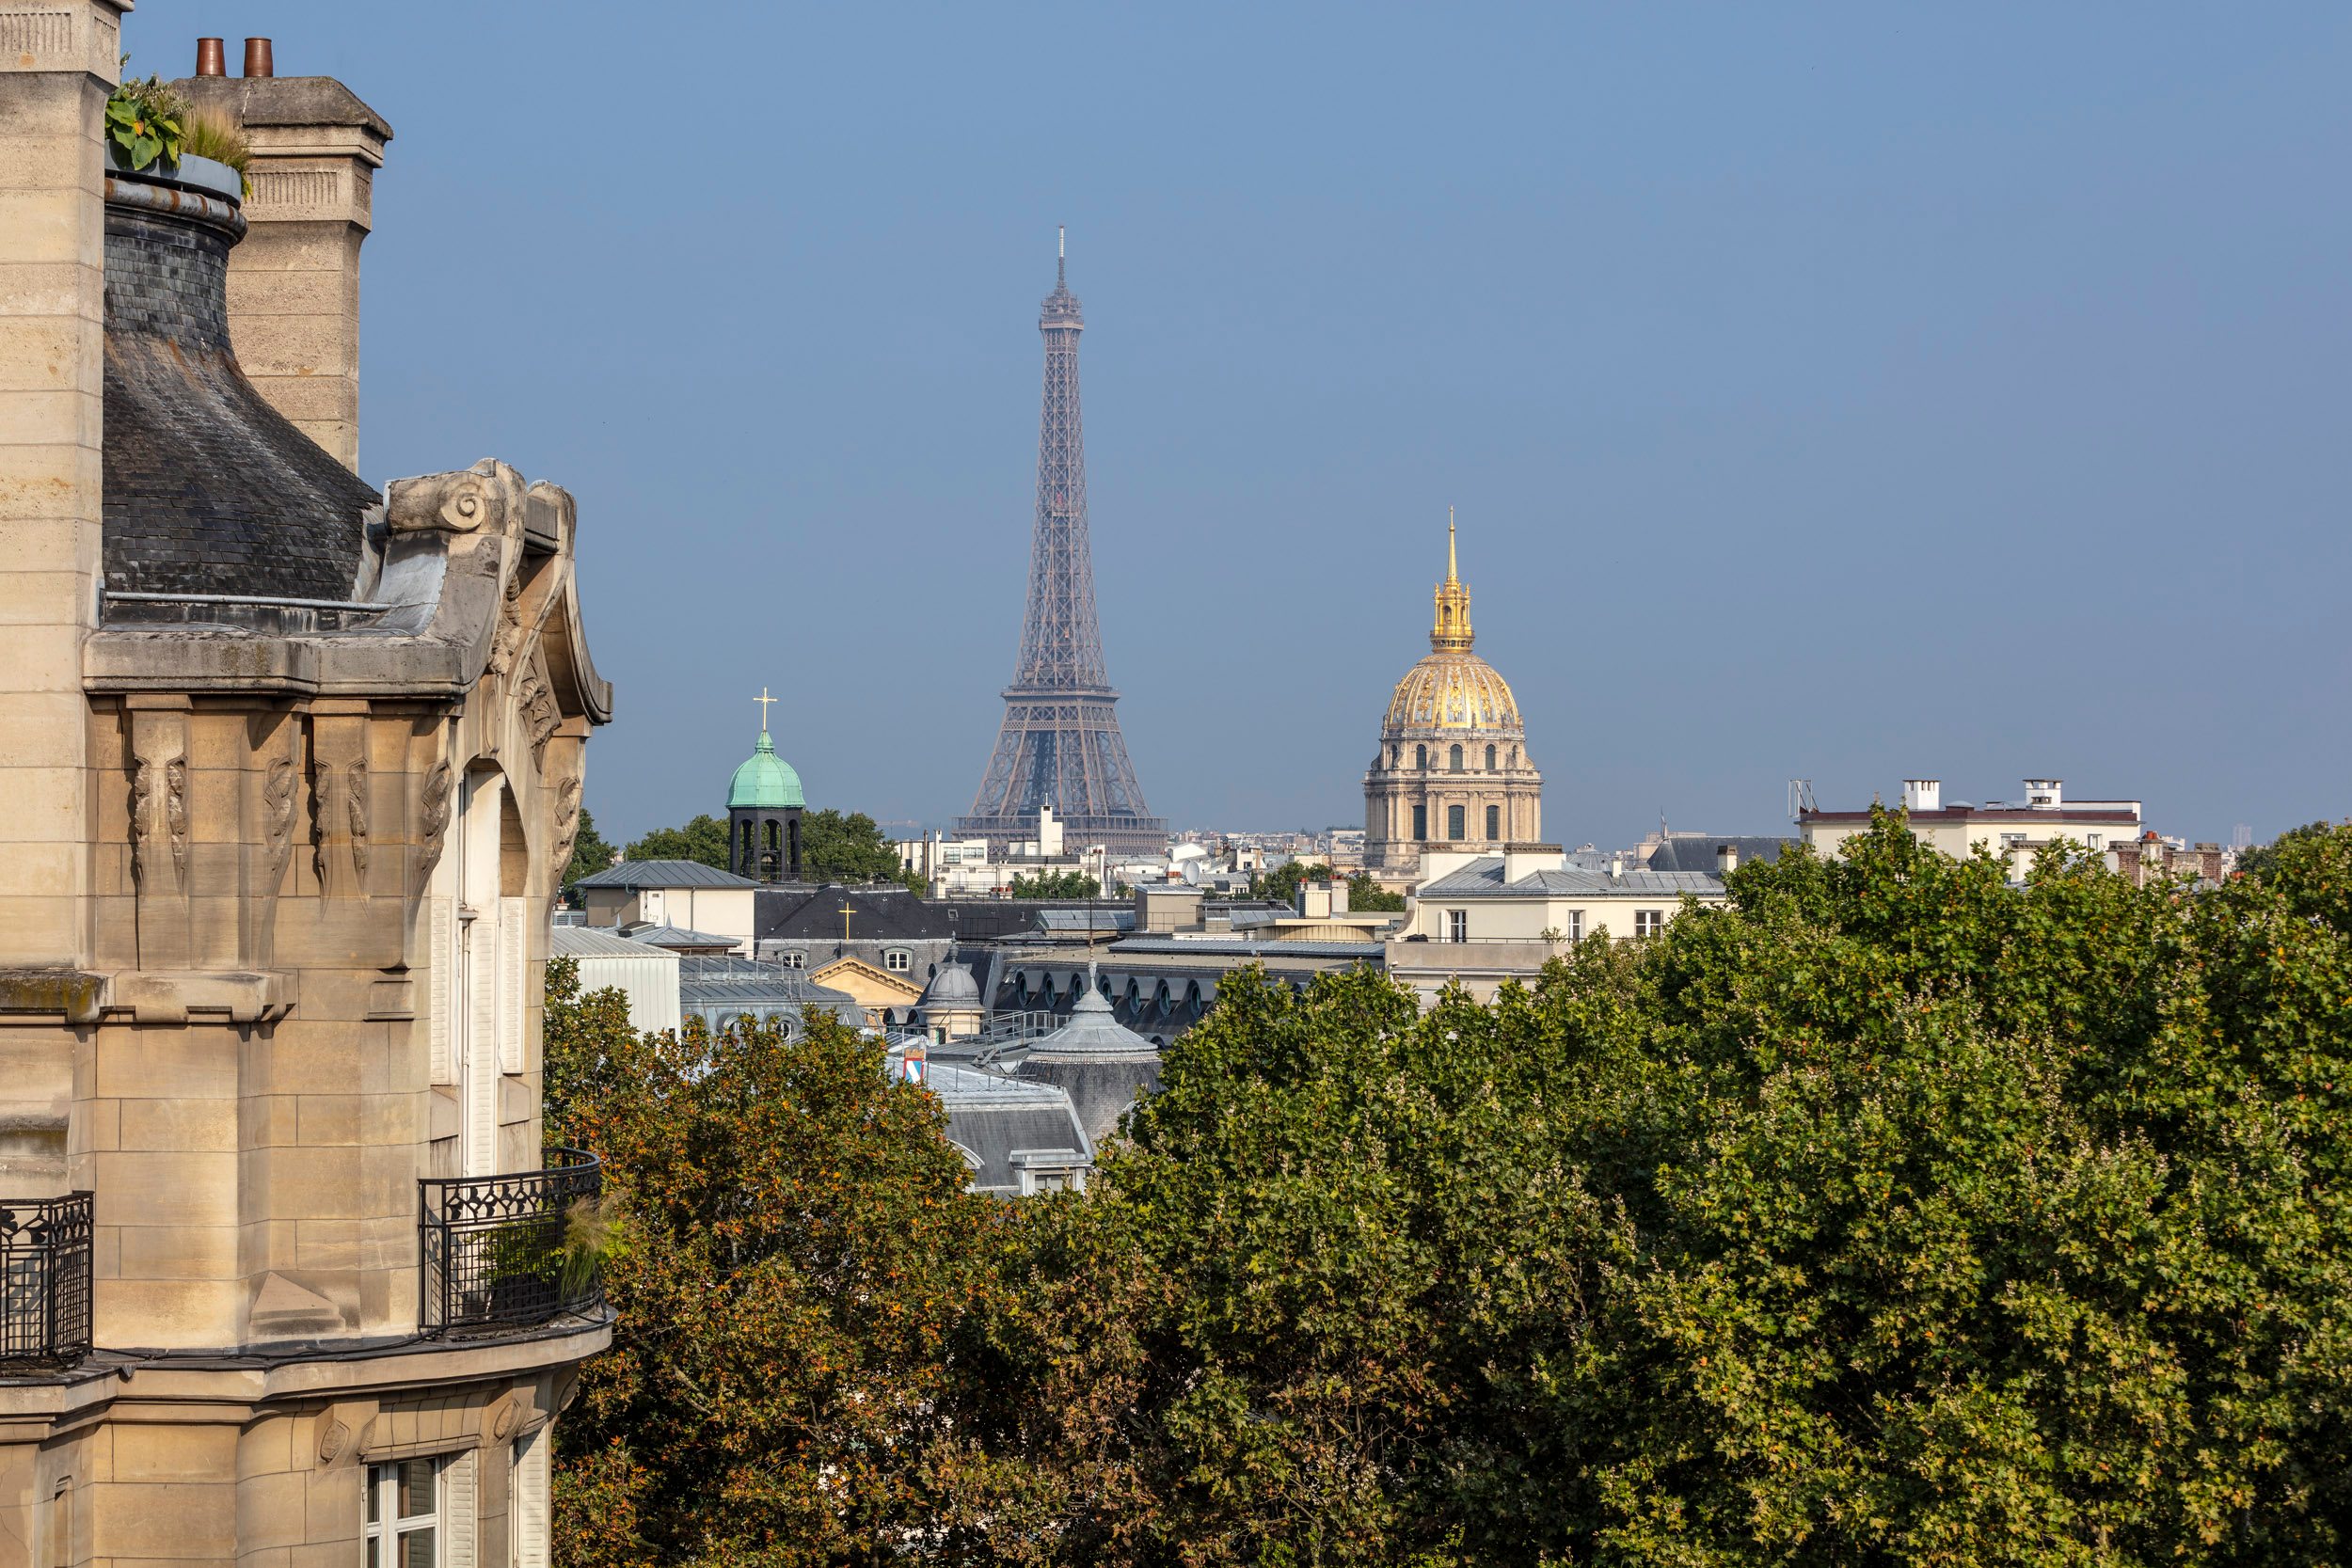 Quel hôtel parisien a réçu la certification palace?